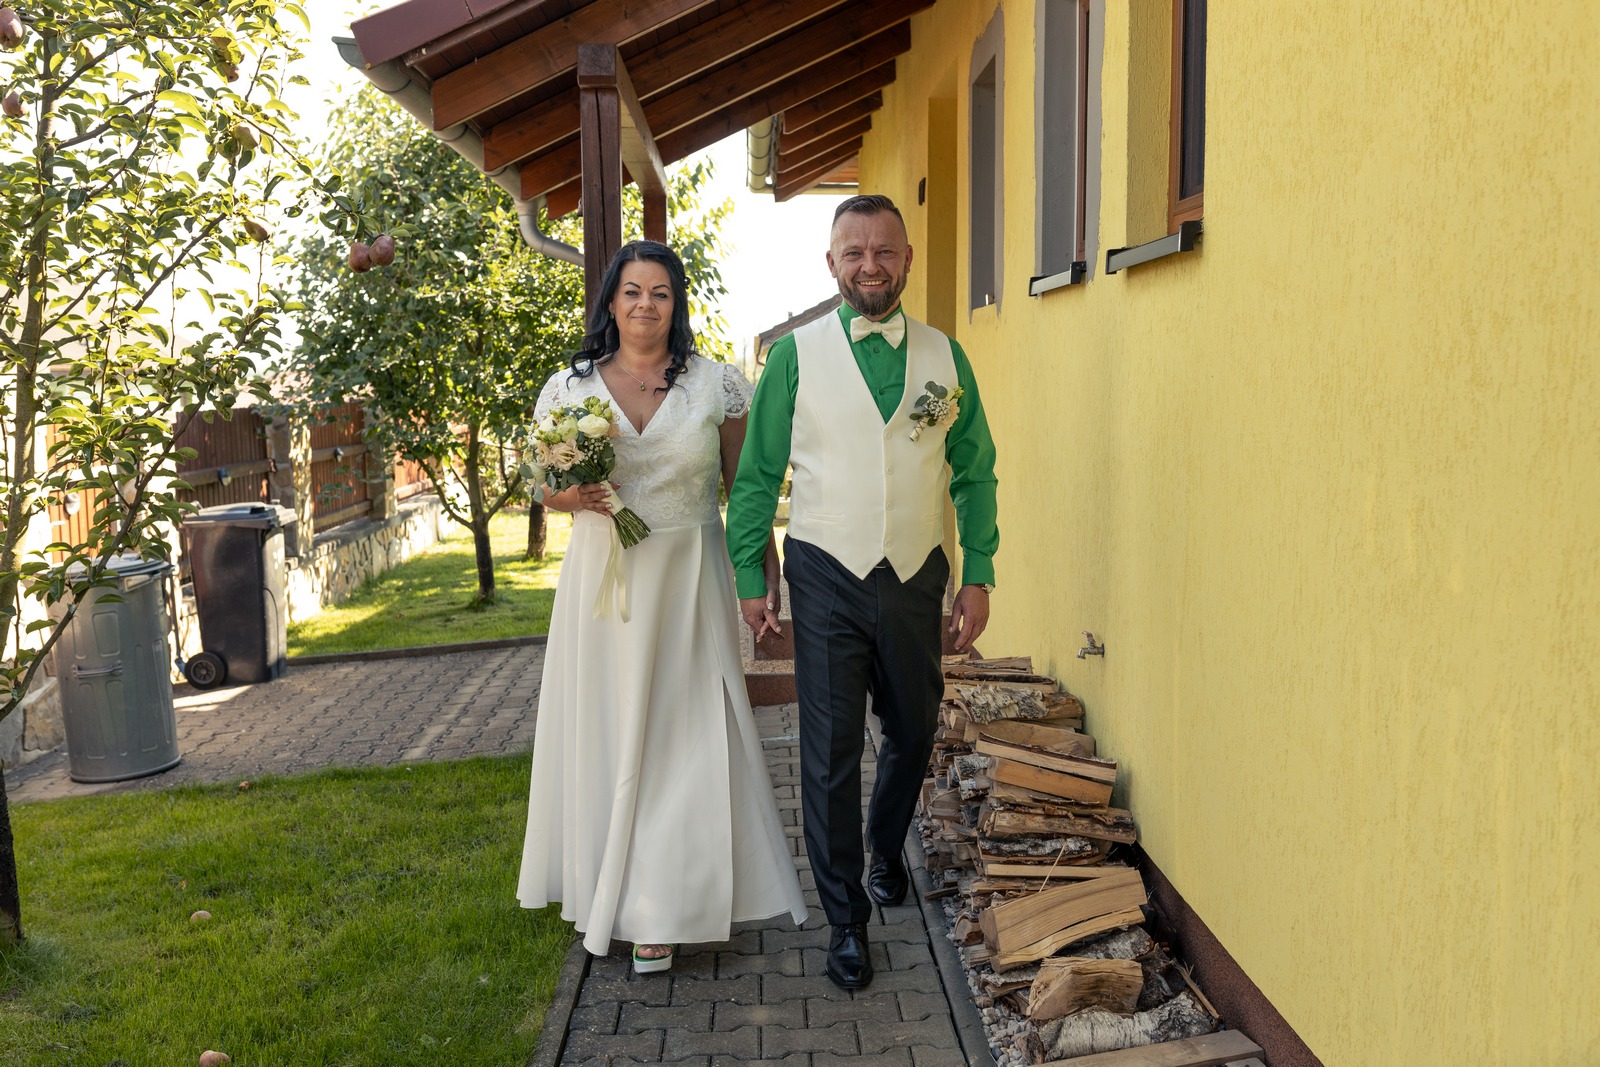 Svatba v Zámeckém parku v Hořovicích - ženich s nevěstou vycházejí z domu